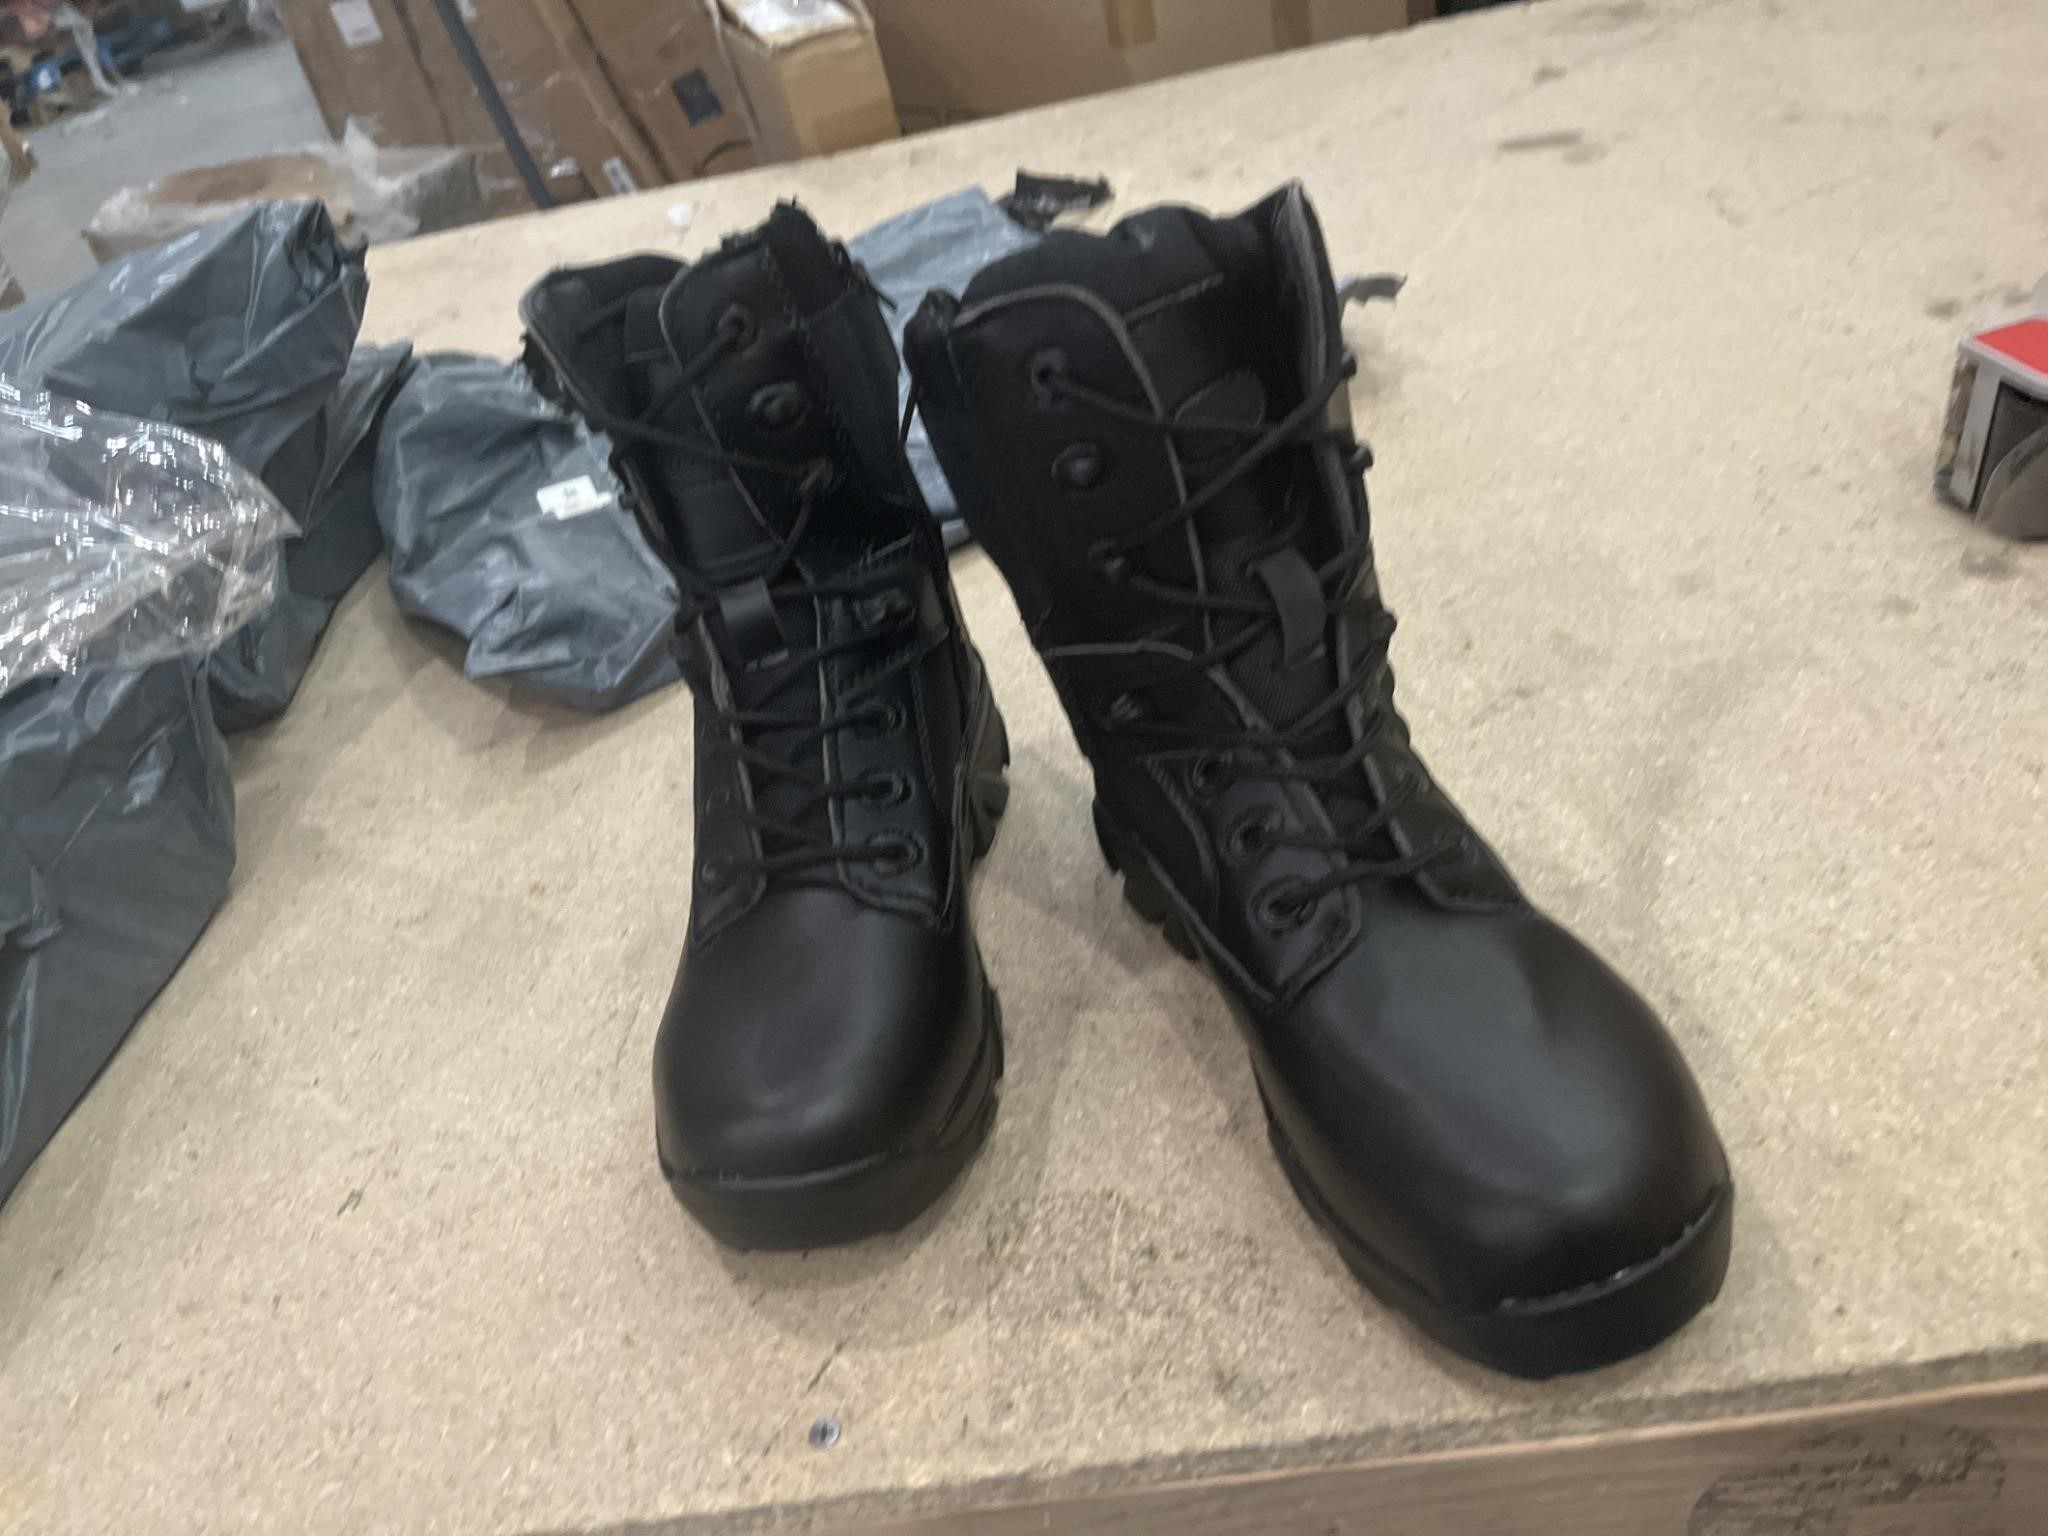 Delta boots